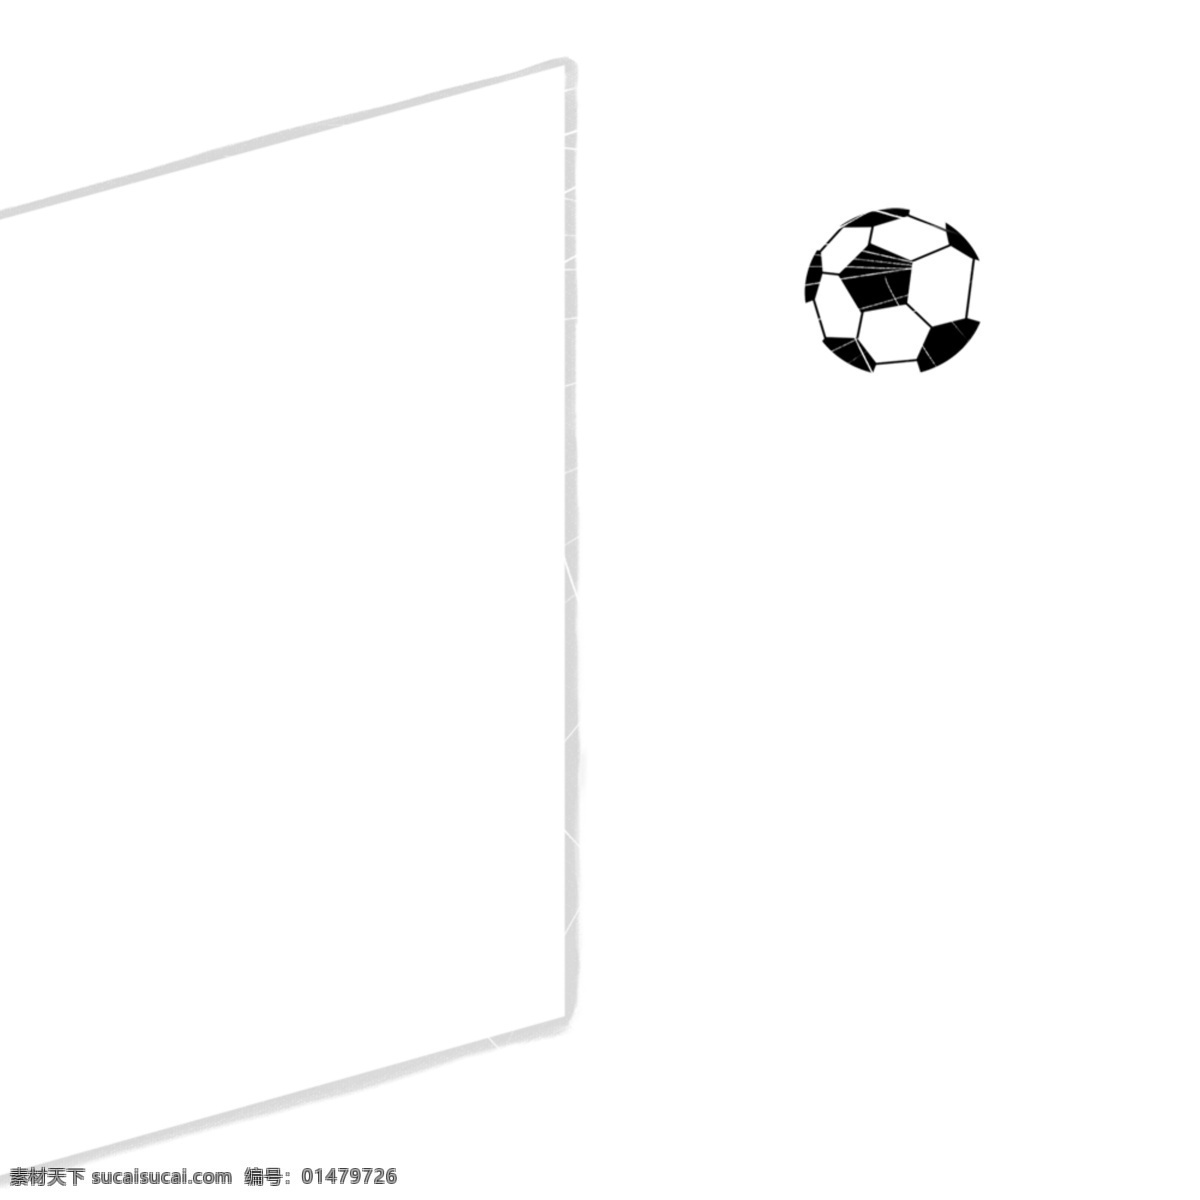 飞 球门 足球 元素 飞向球门 足球运动 足球比赛 世界杯赛 足球世界杯 卡通足球 矢量足球